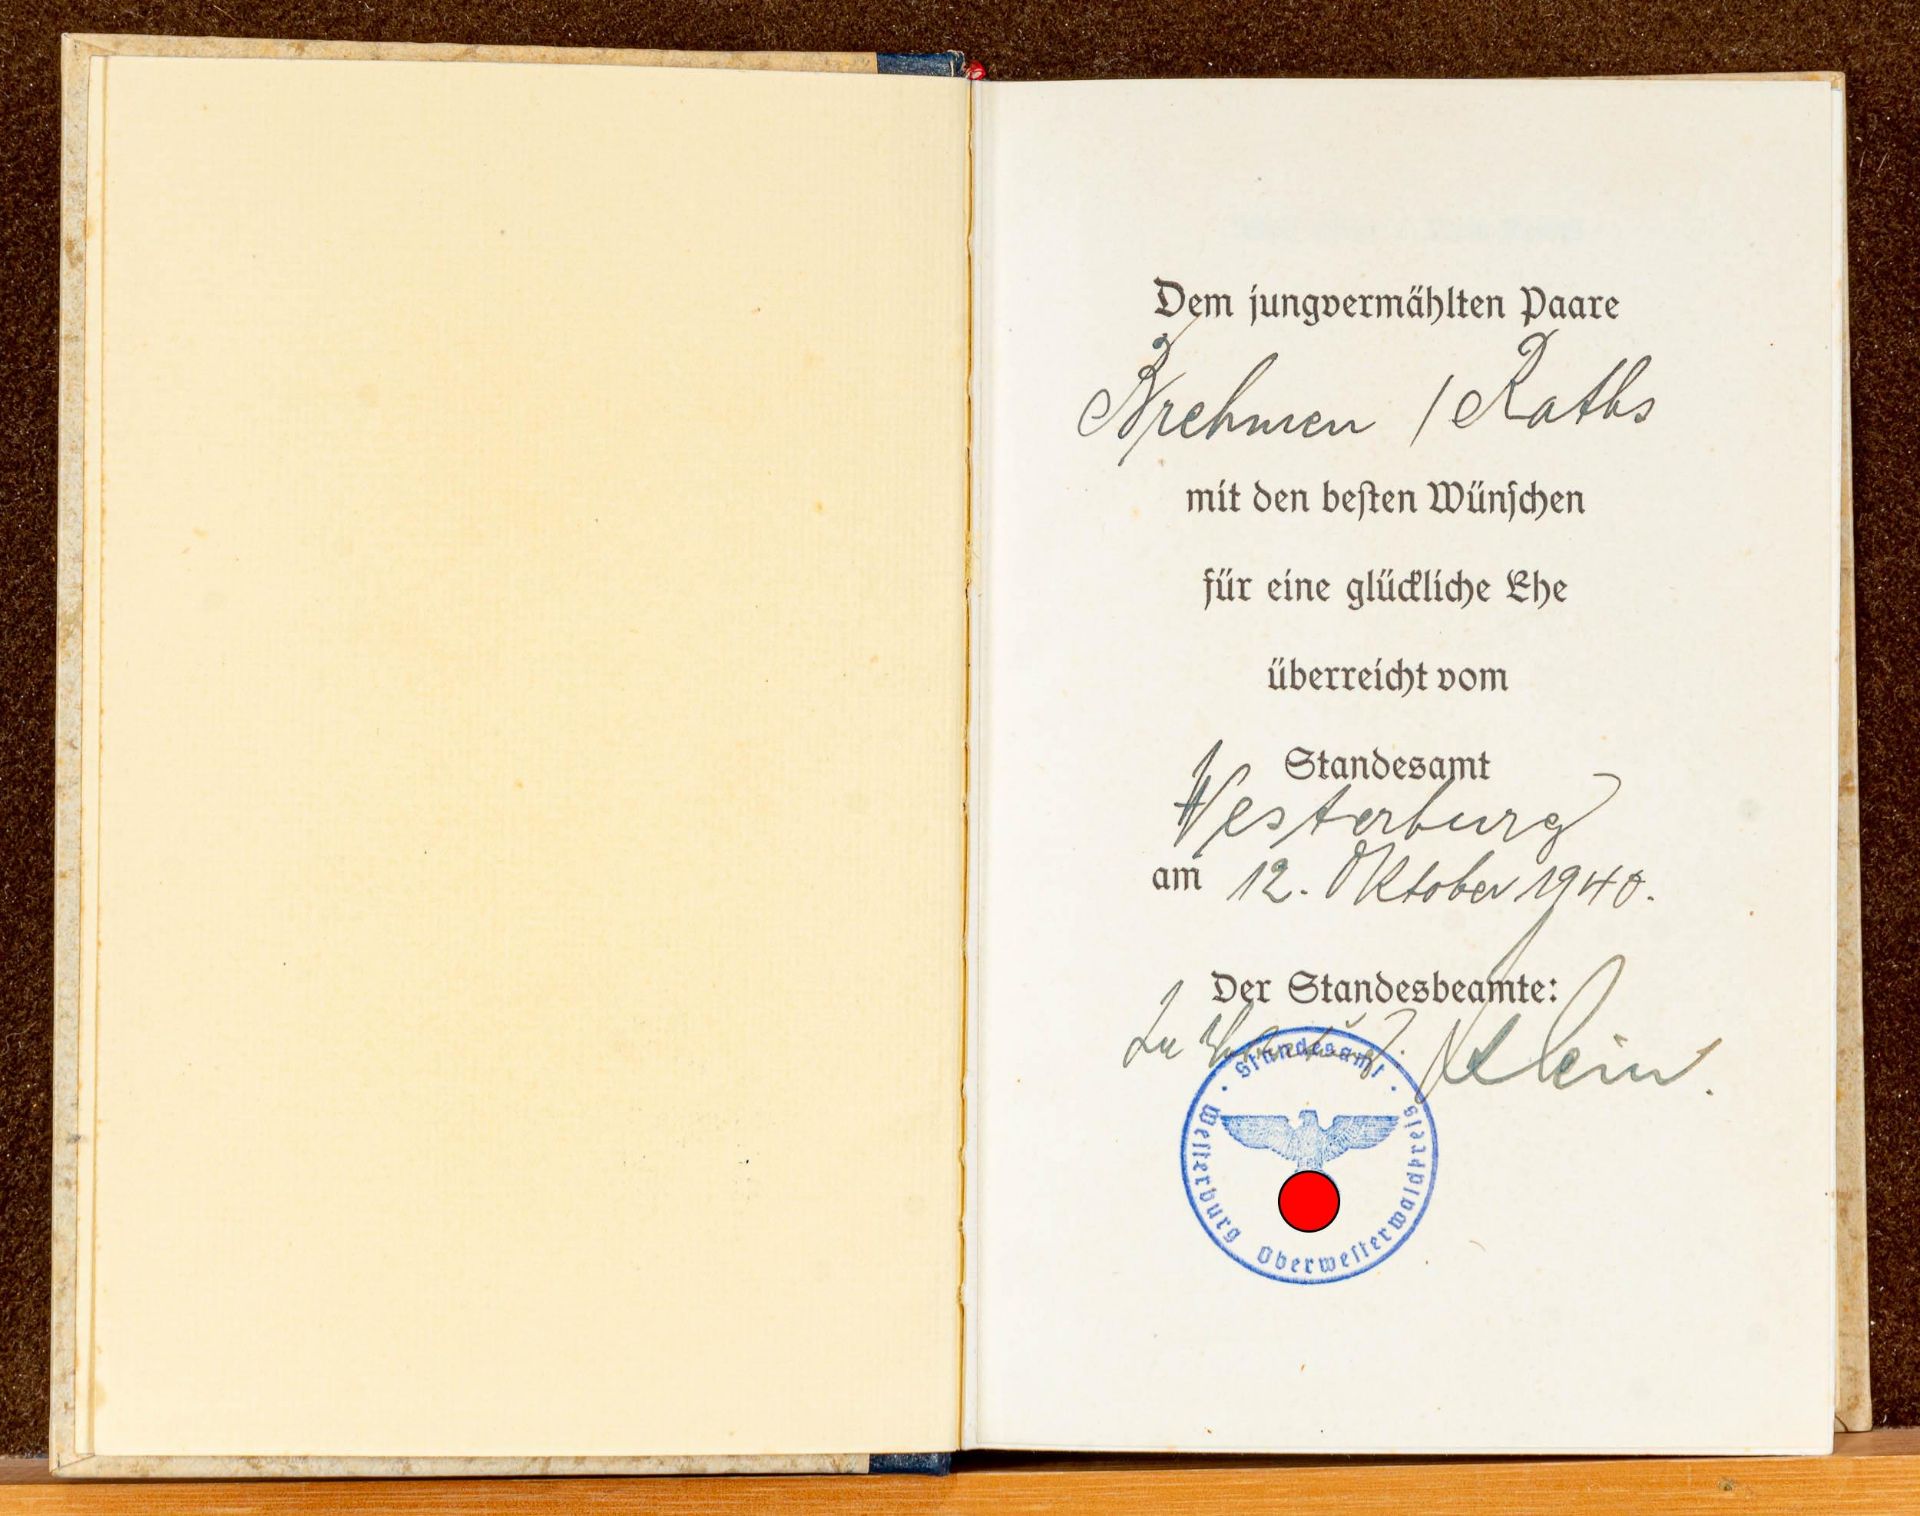 A.H. "Mein Kampf", Hochzeitsausgabe, gegeben am 12. 10. 1940, 524/ 528000 Auflage. Guter, gebraucht - Image 2 of 3